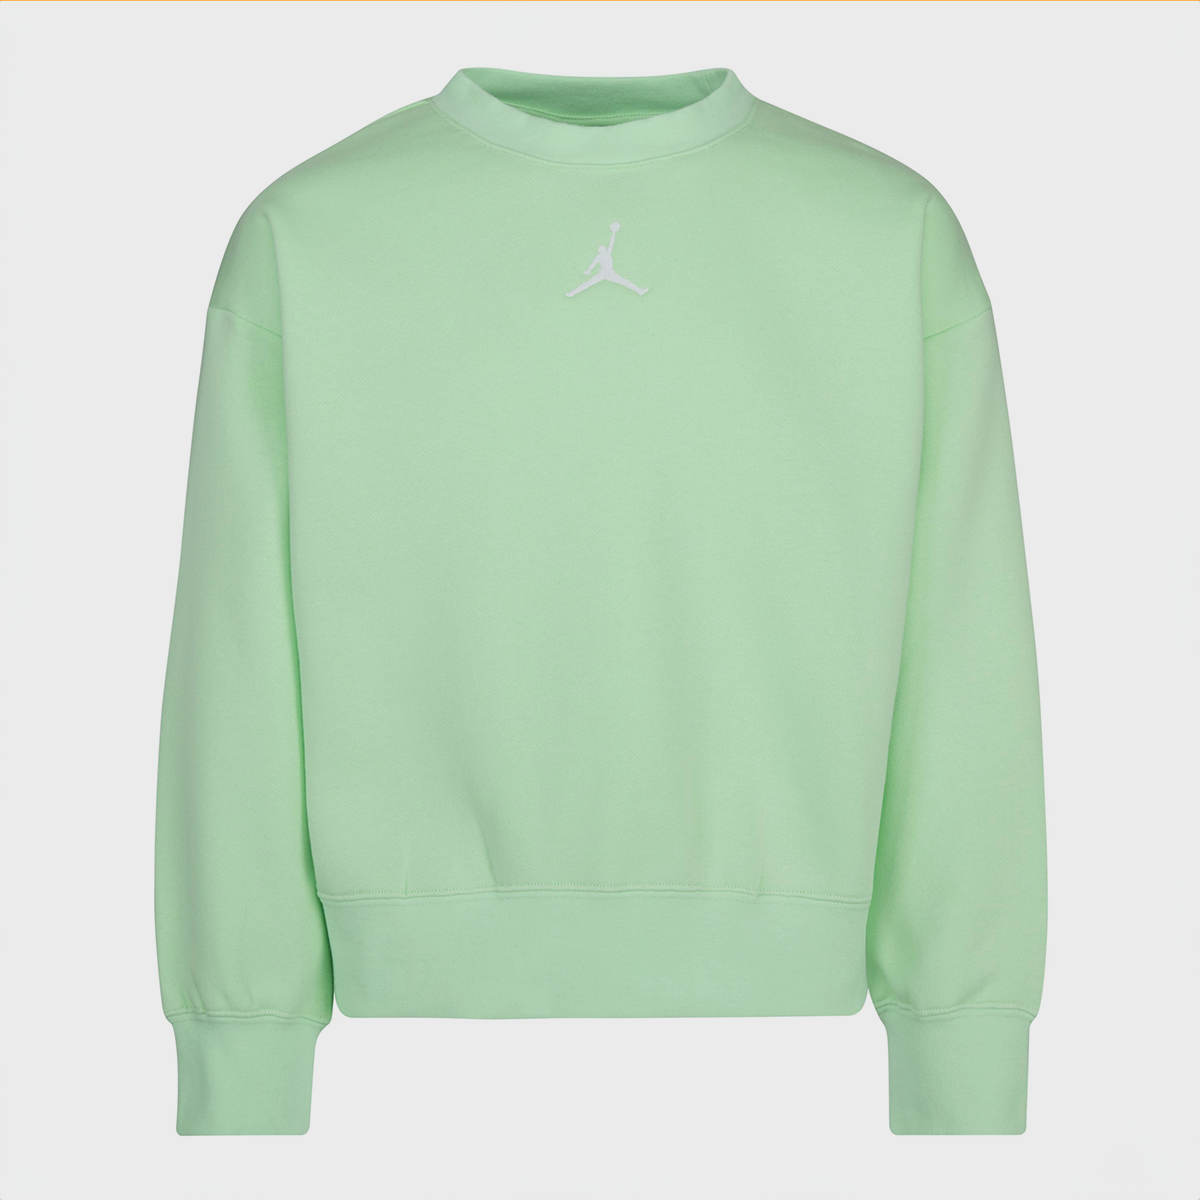 Jordan Icon Play Oversized Crew Sweatshirts Kids vapor green maat: 128 beschikbare maaten:128 158 170